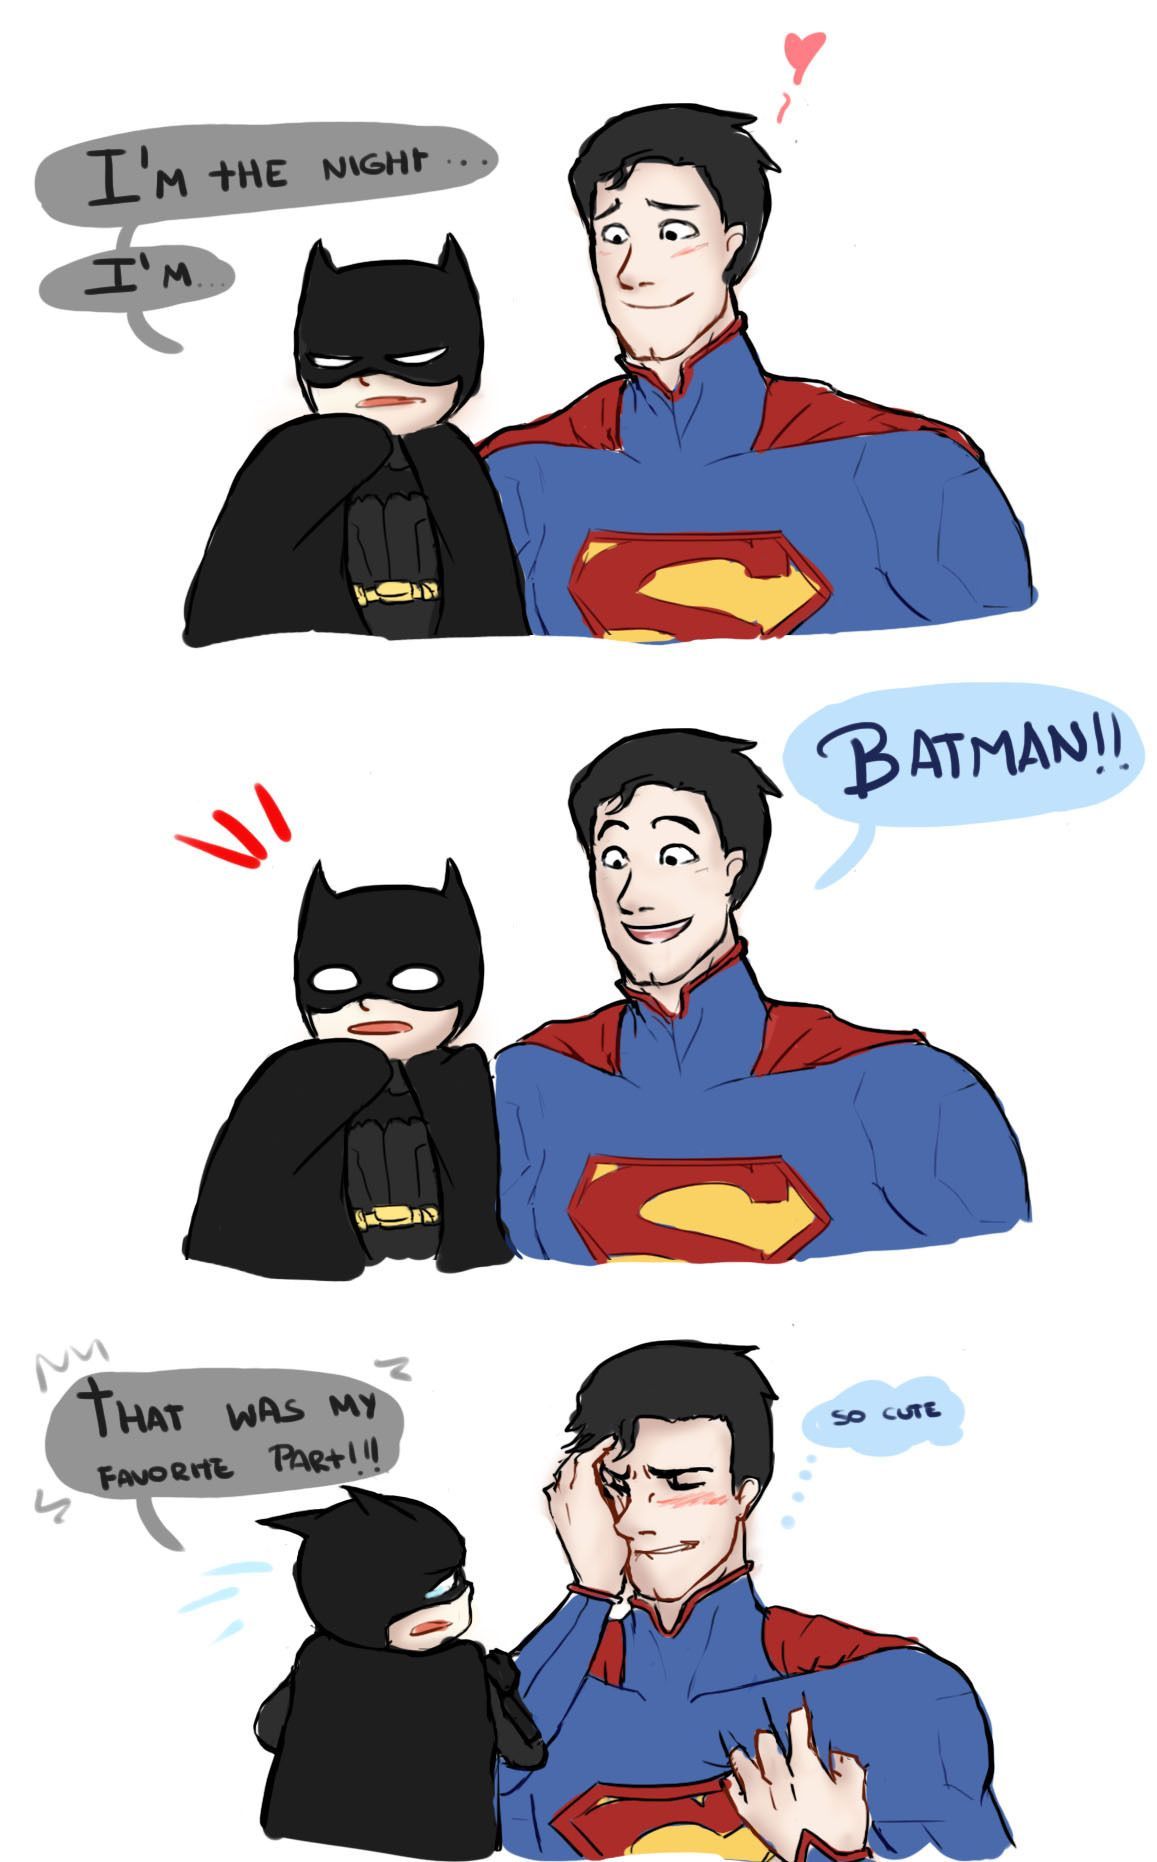 10 Hilarious DC Fan-Art Photos That Would Even Make Batman Laugh